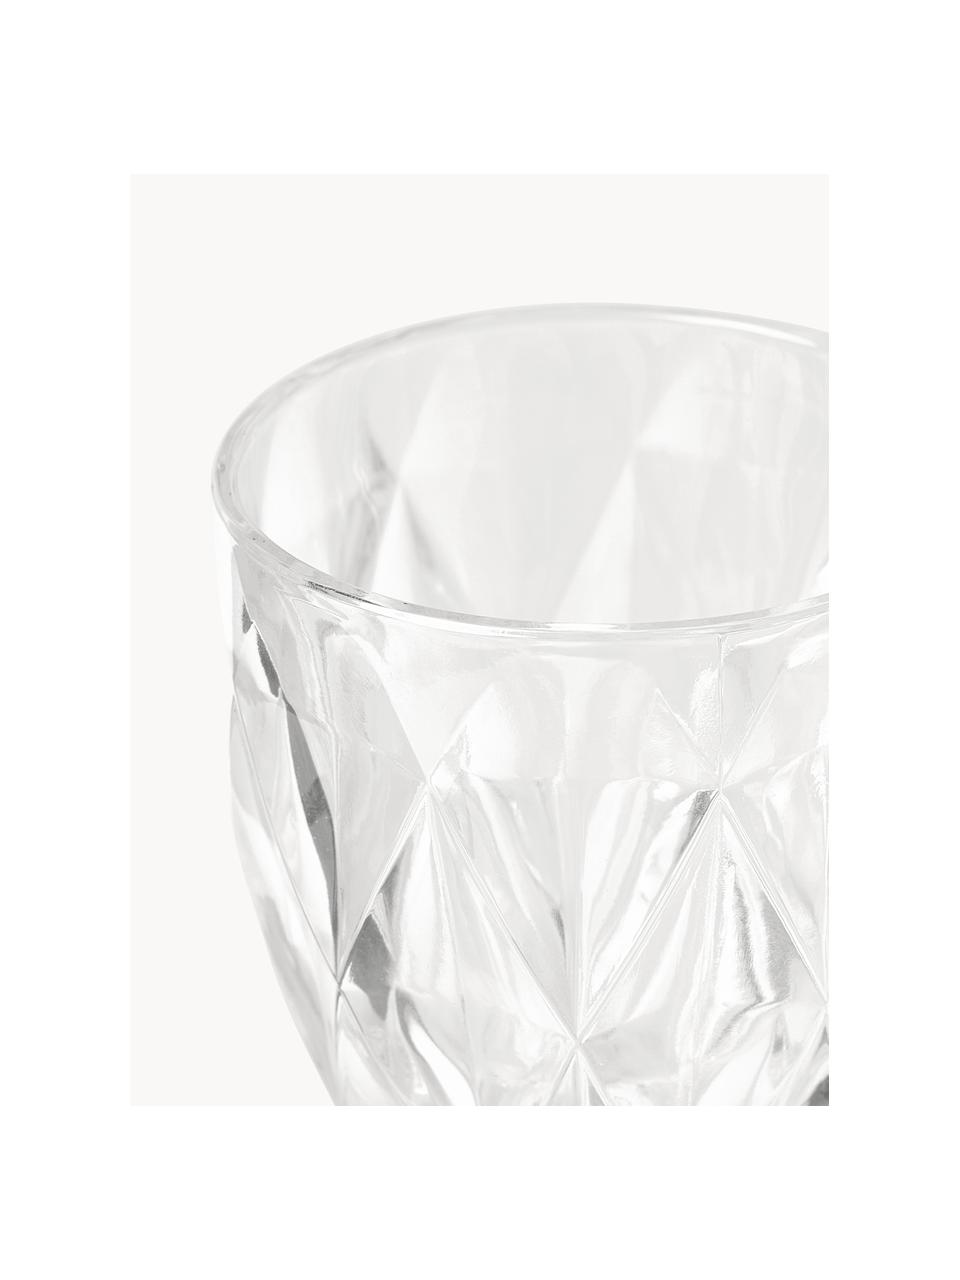 Weingläser Colorado mit Strukturmuster, 4 Stück, Glas, Transparent, Ø 9 x H 17 cm